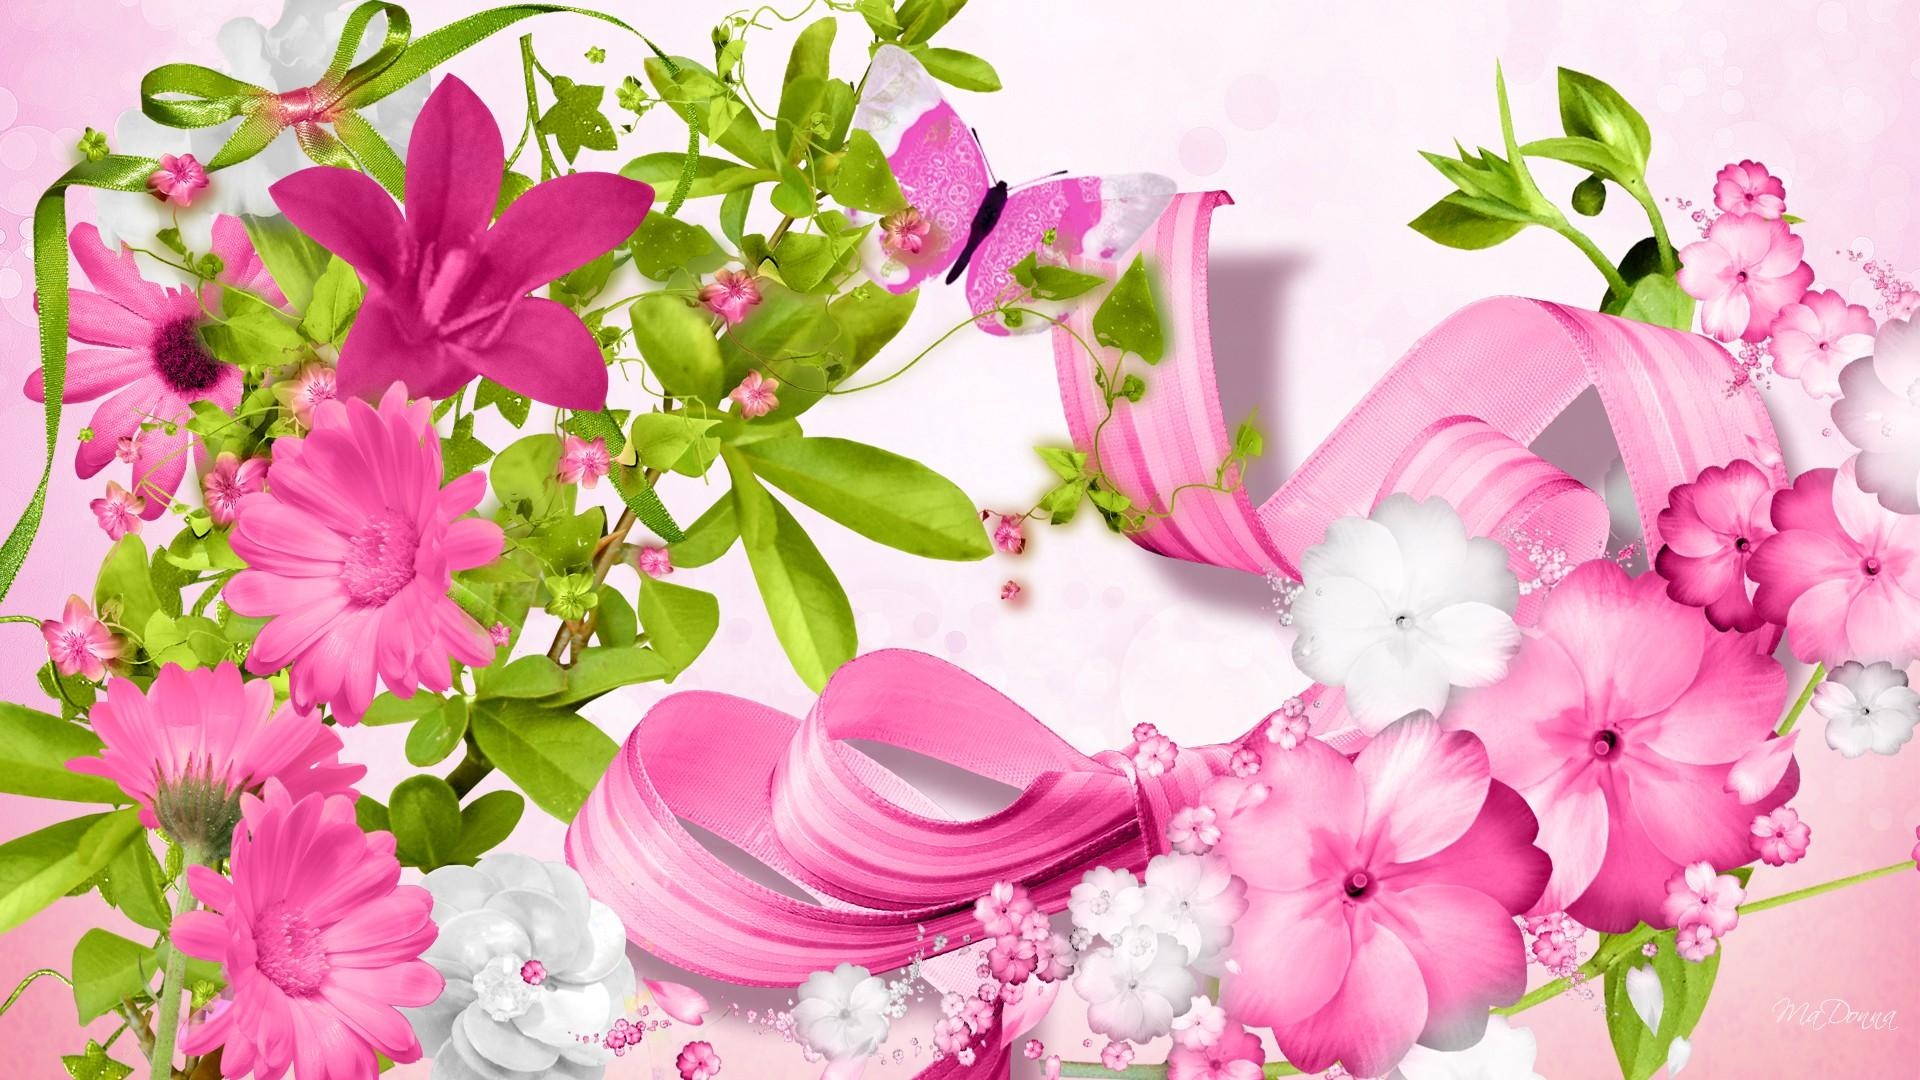 花如此粉红色的壁纸,高清图片,壁纸,自然风景